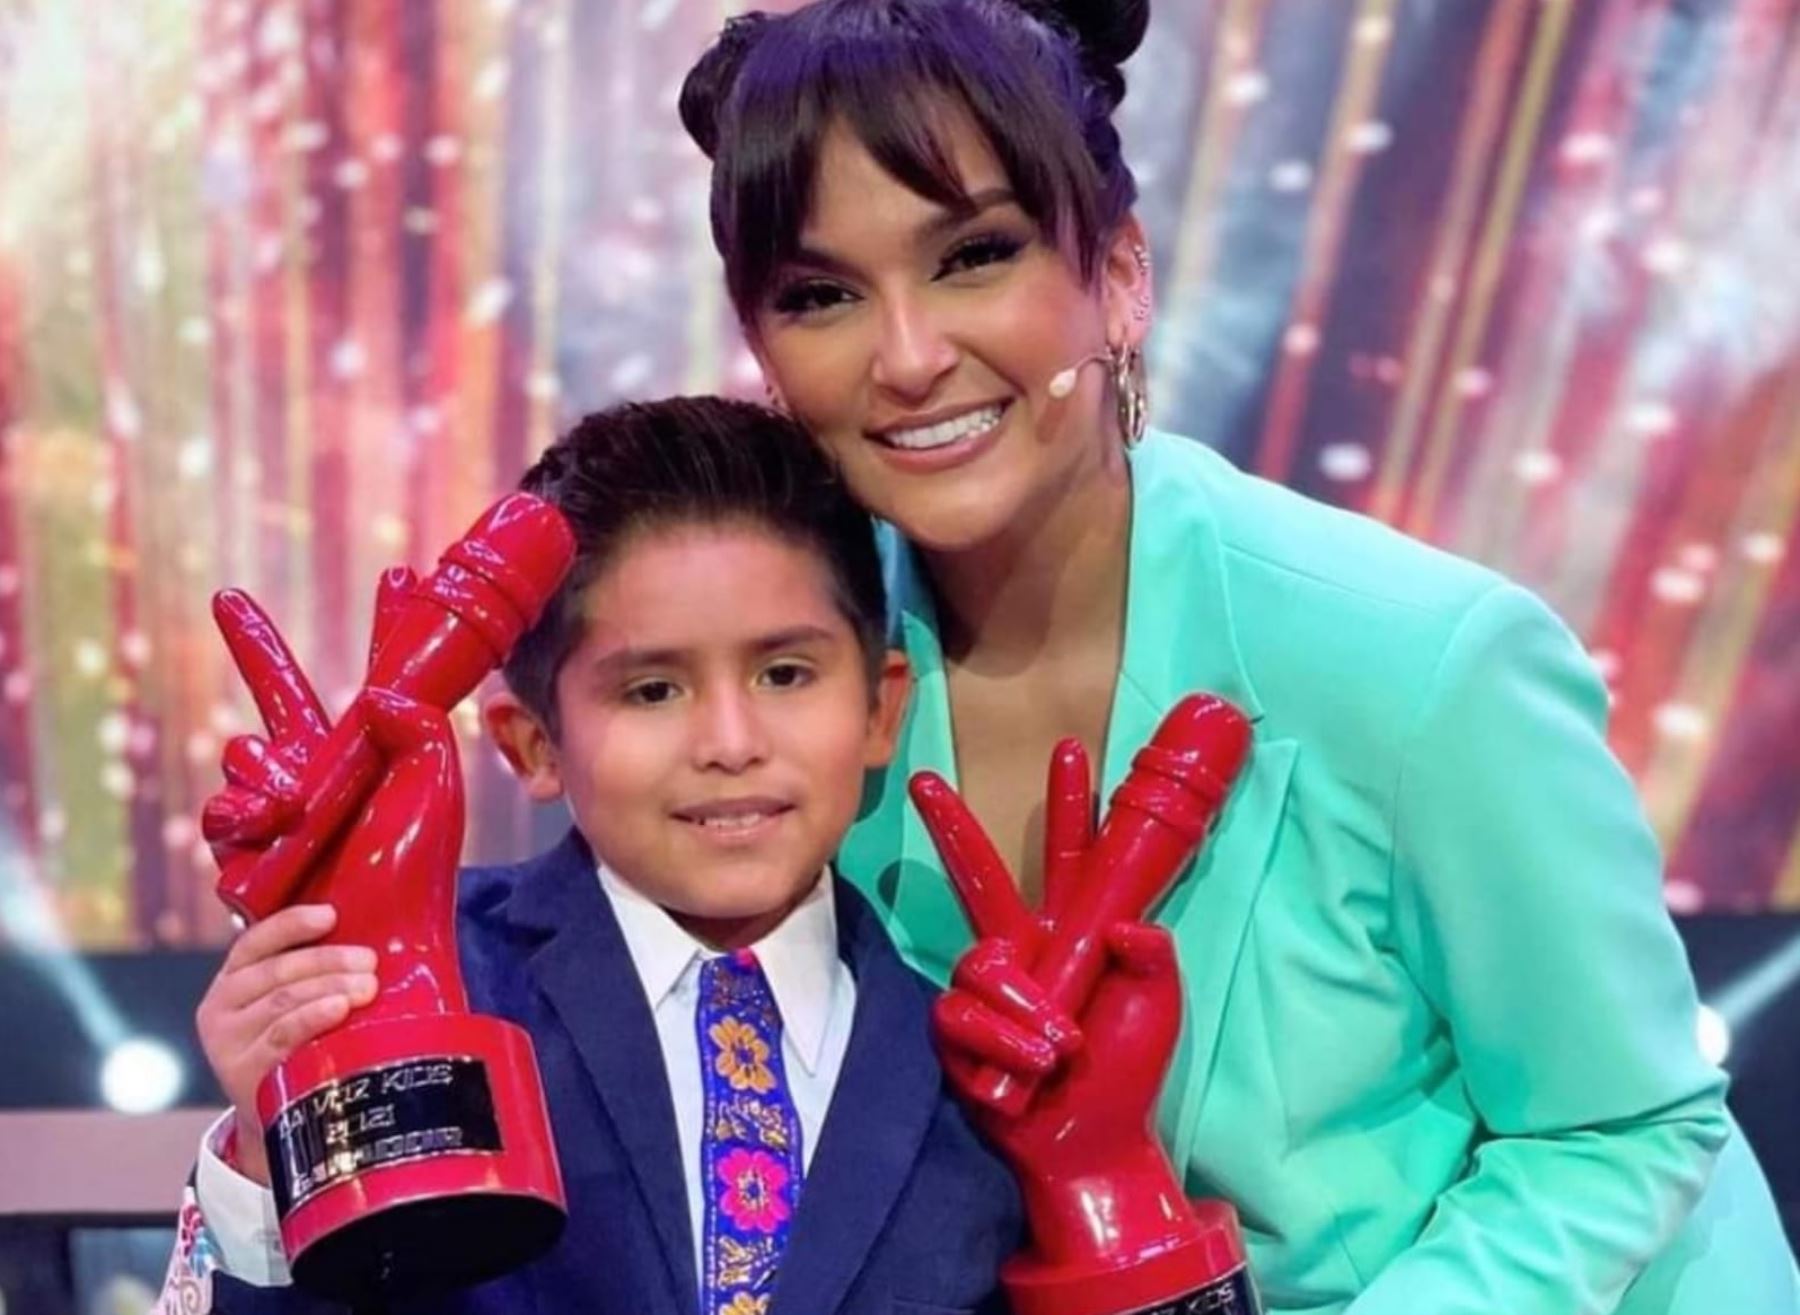 Daniela junto al niño ganador en la edición de La Voz Kids.